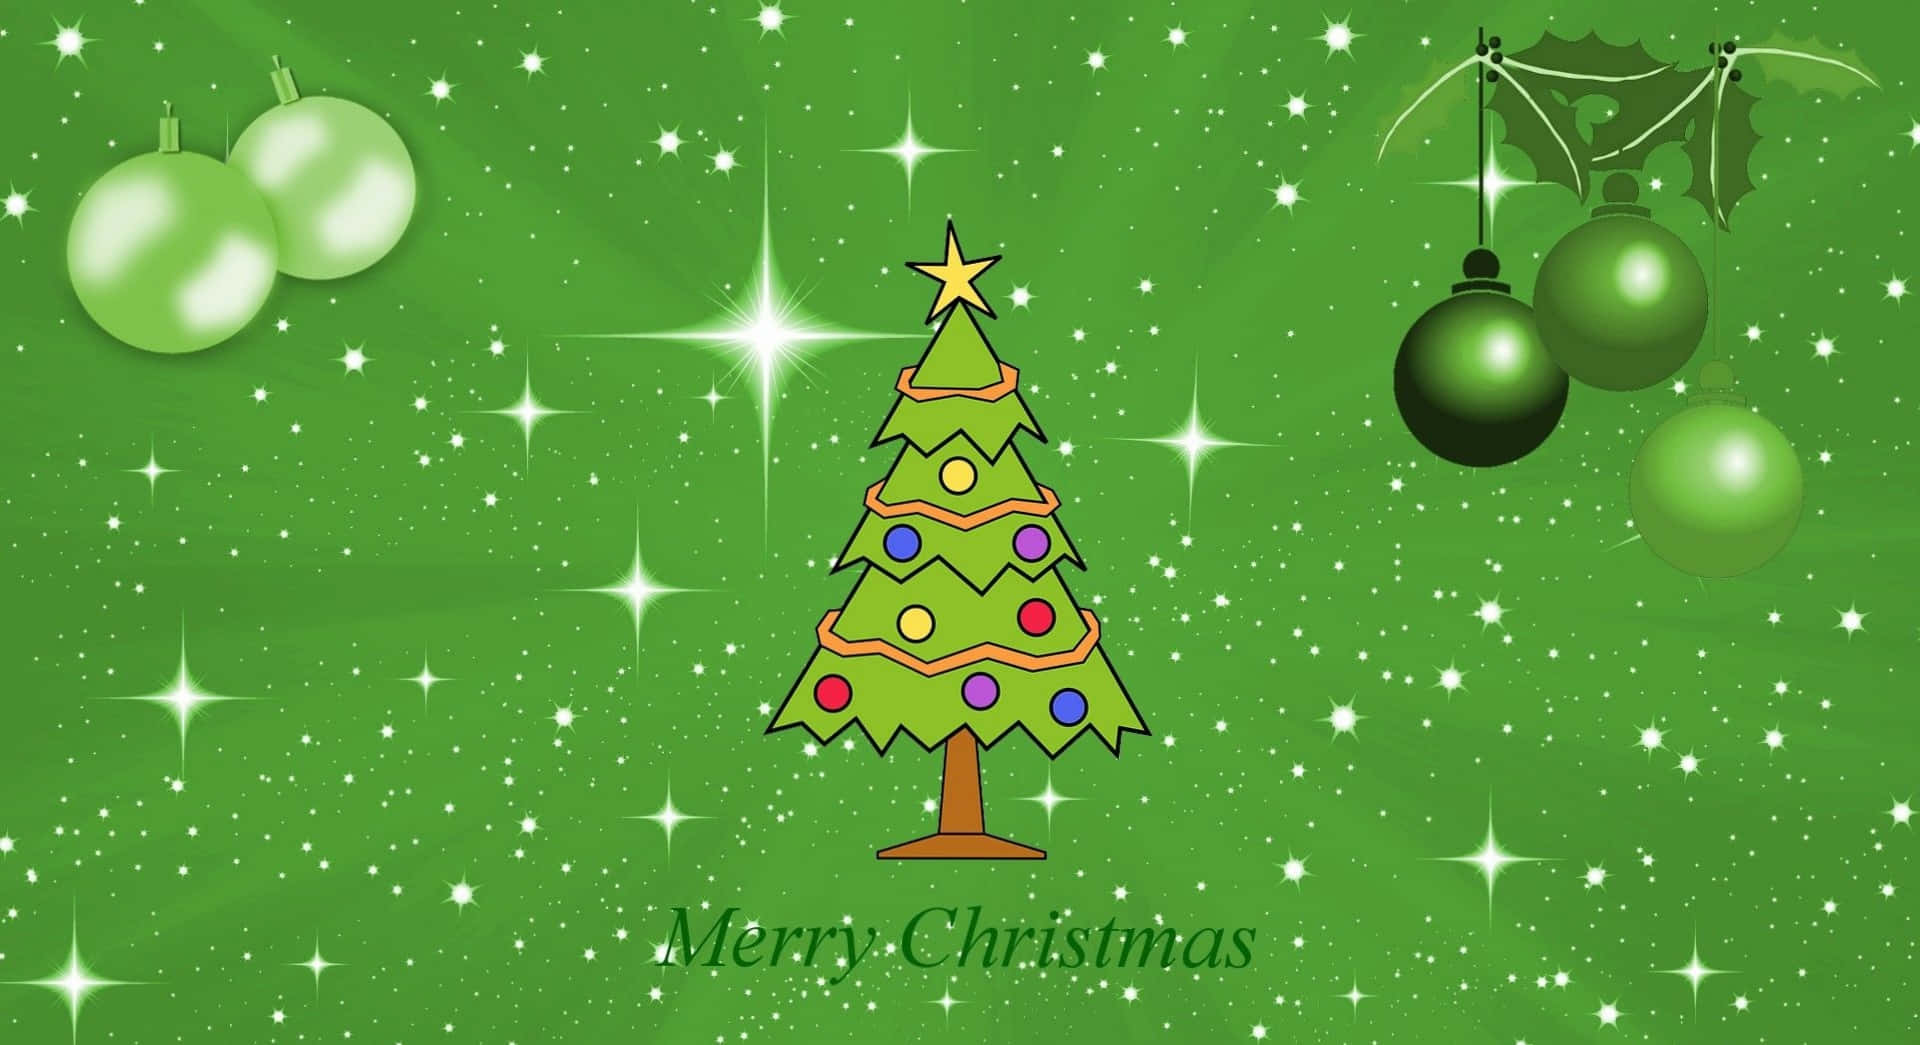 Få en festlig, grøn jule sæson med bæredygtige julepynt. Wallpaper